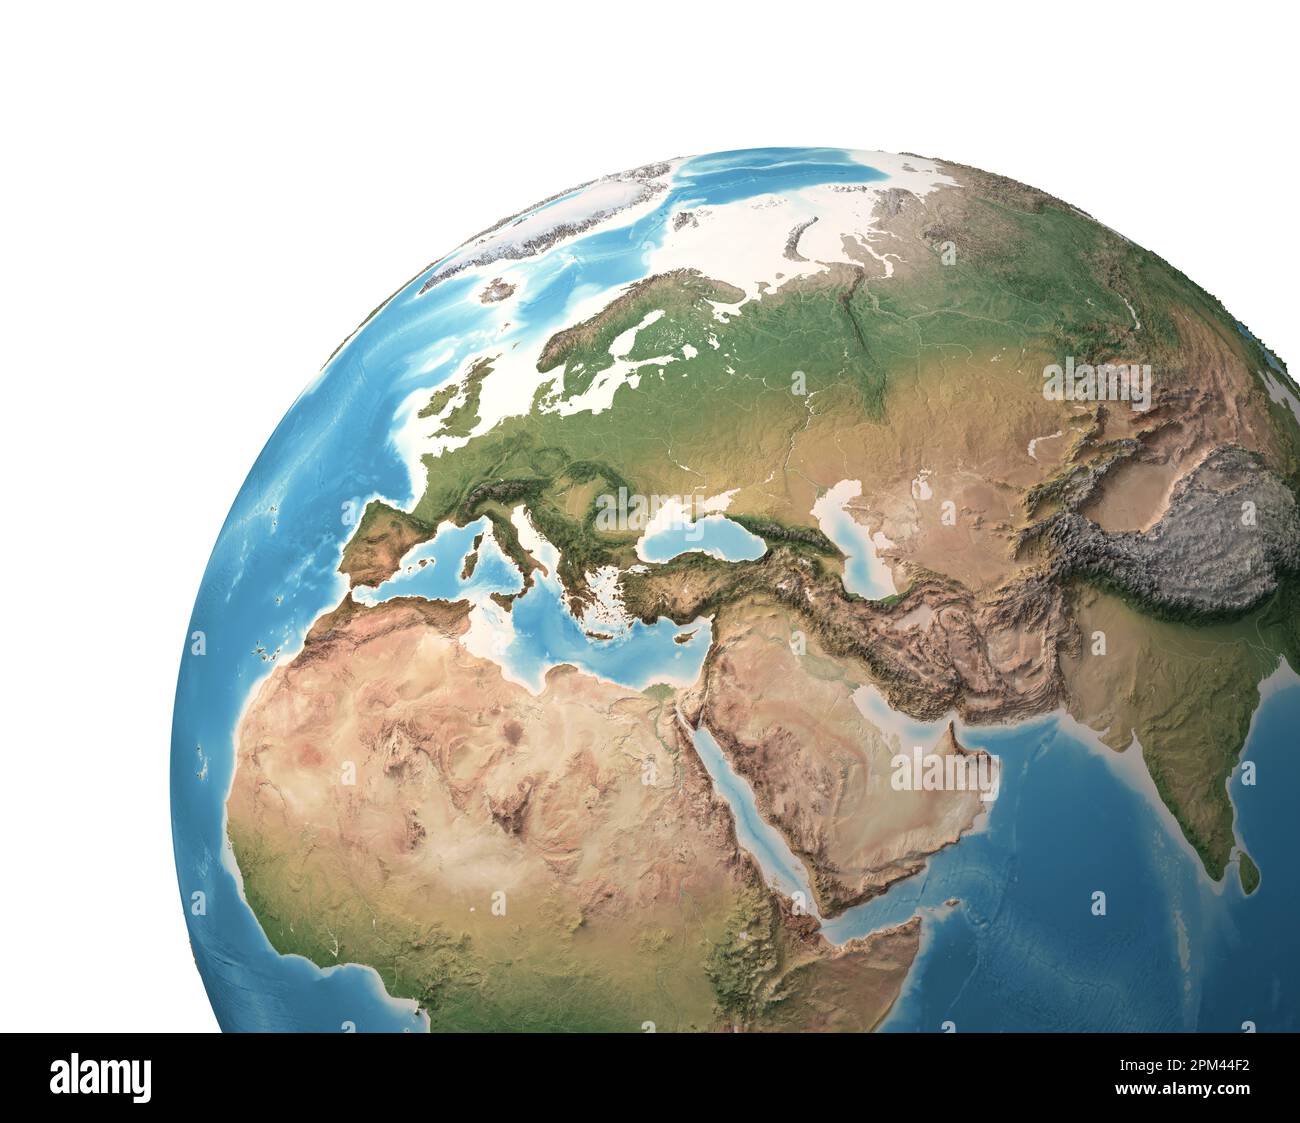 Hochauflösende Satellitenansicht des Planeten Erde mit Schwerpunkt auf Europa, Eurasien, dem Nahen Osten und Nordafrika – Elemente, die von der NASA bereitgestellt werden Stockfoto